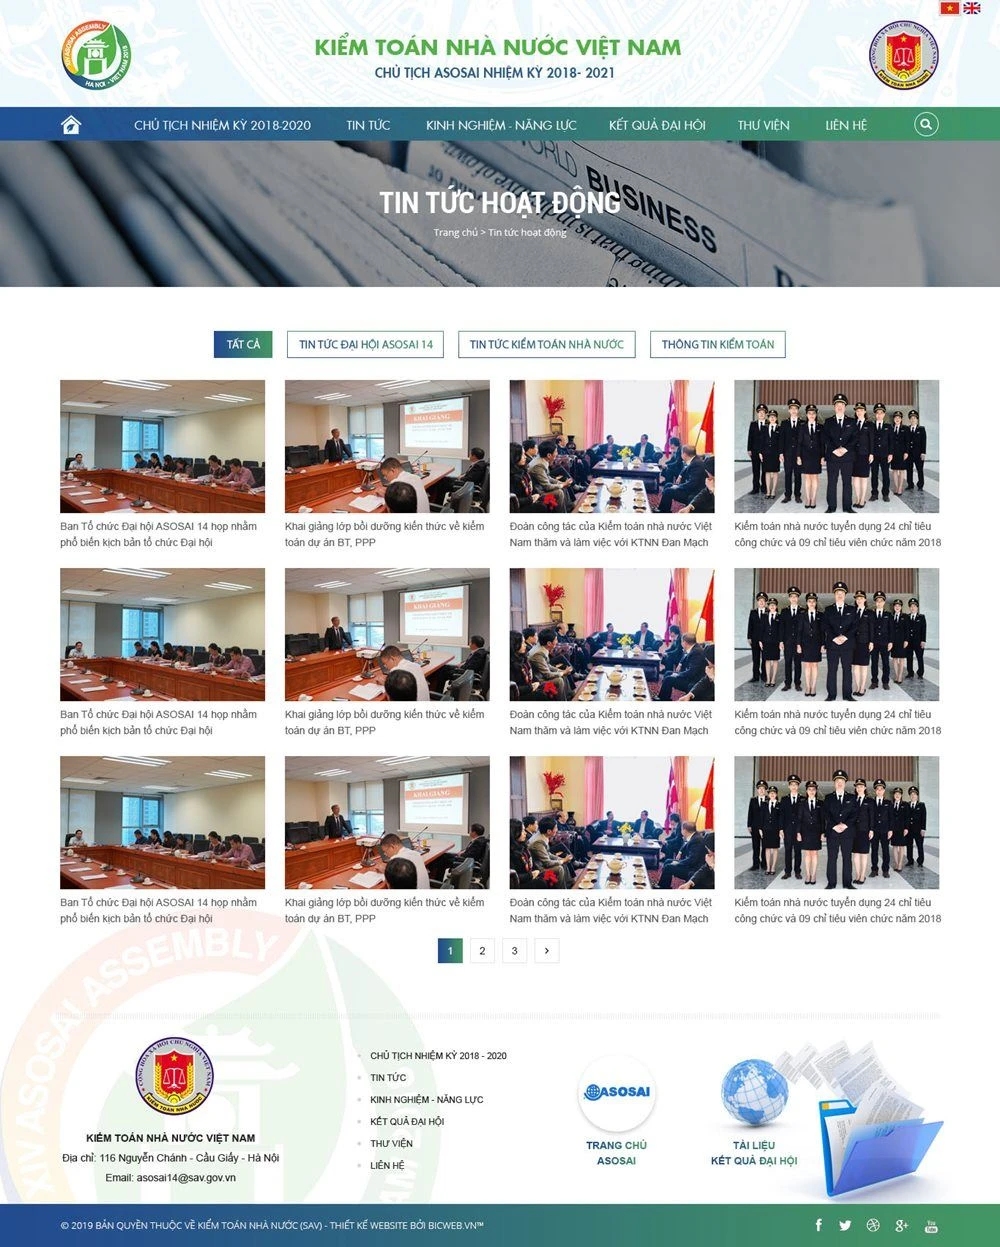 Trang thông tin chủ tịch các cơ quan kiểm toán tối cao ASOSAI nhiệm kỳ 2018 - 2021